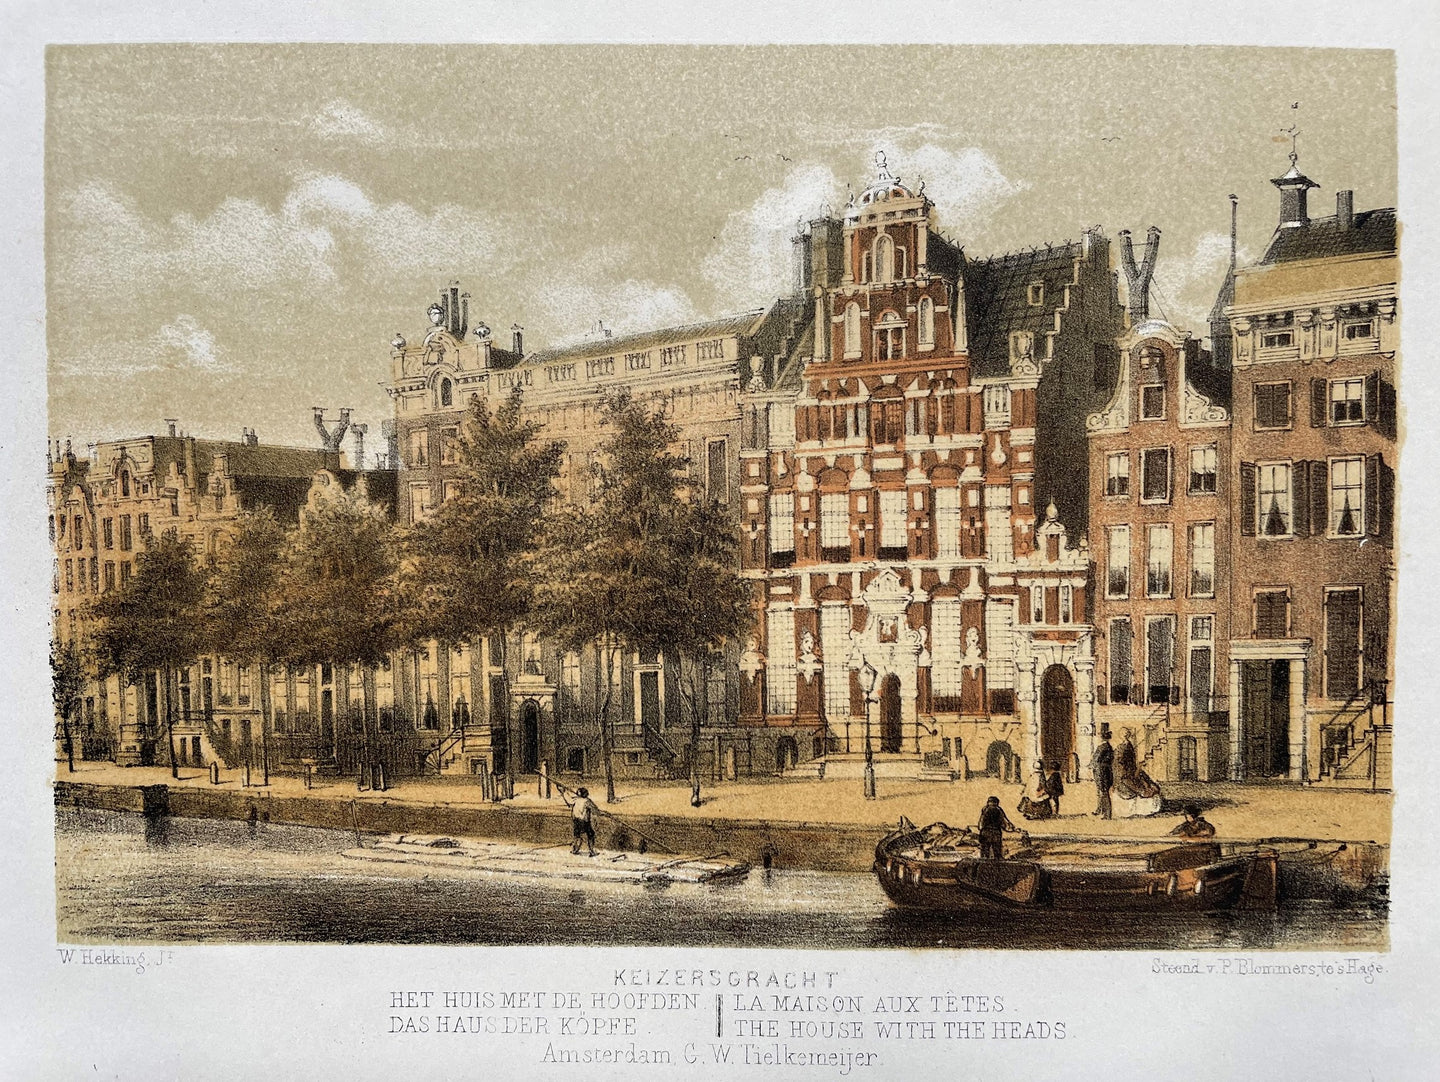 Amsterdam Keizersgracht Het huis met de hoofden - W Hekking jr/ GW Tielkemeijer - 1861